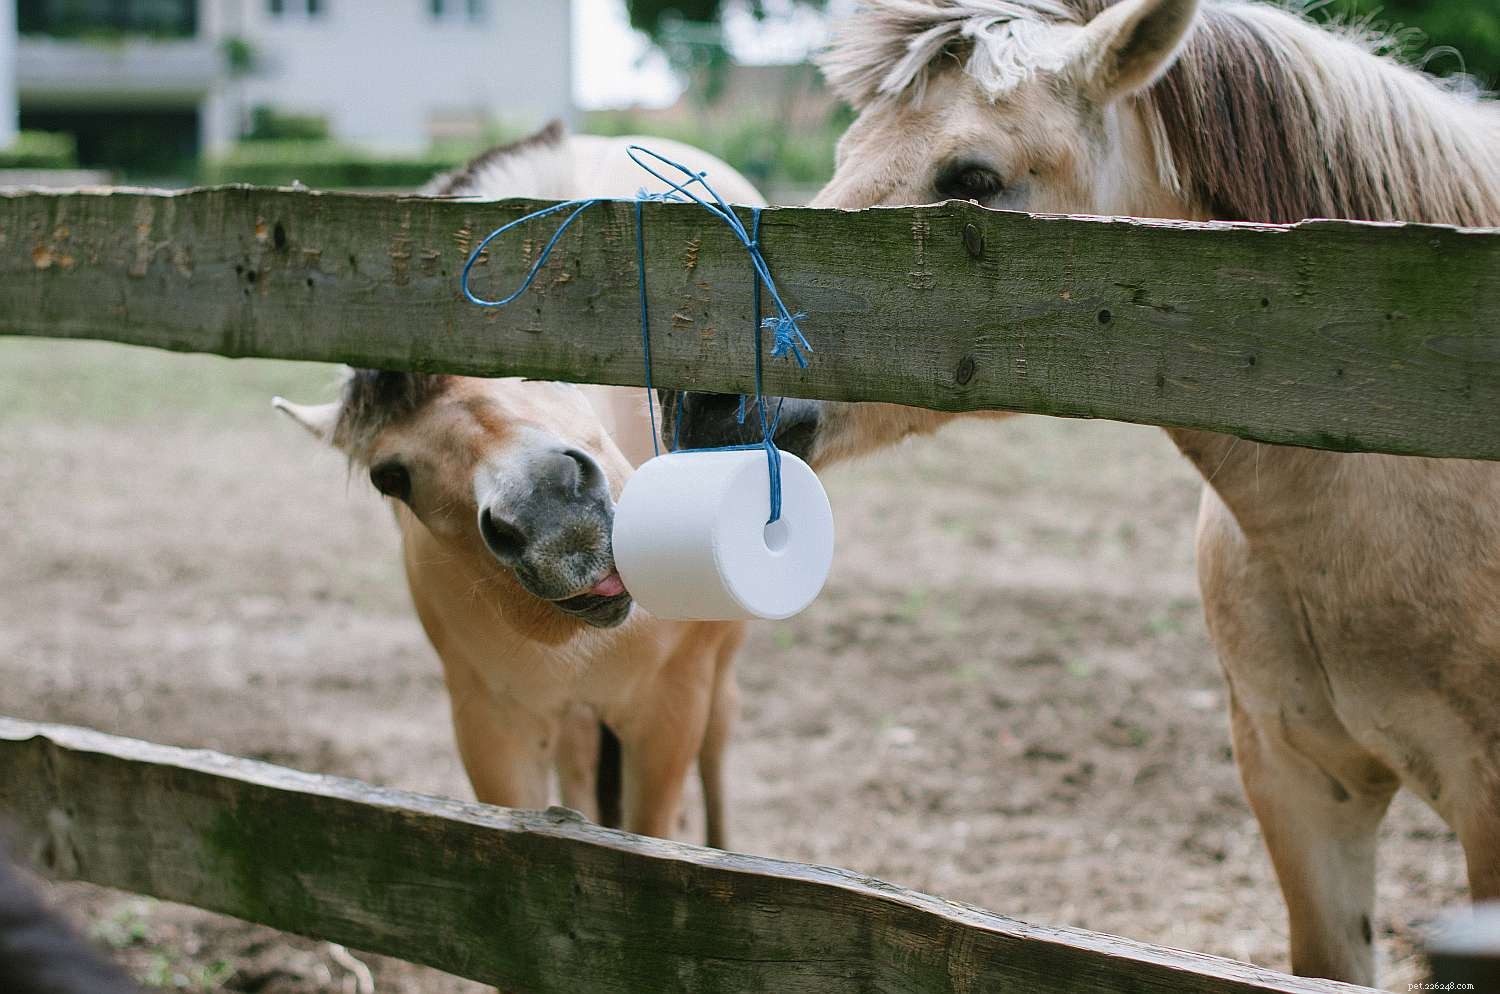 Cosa dare da mangiare a un cavallo per mantenerlo in salute